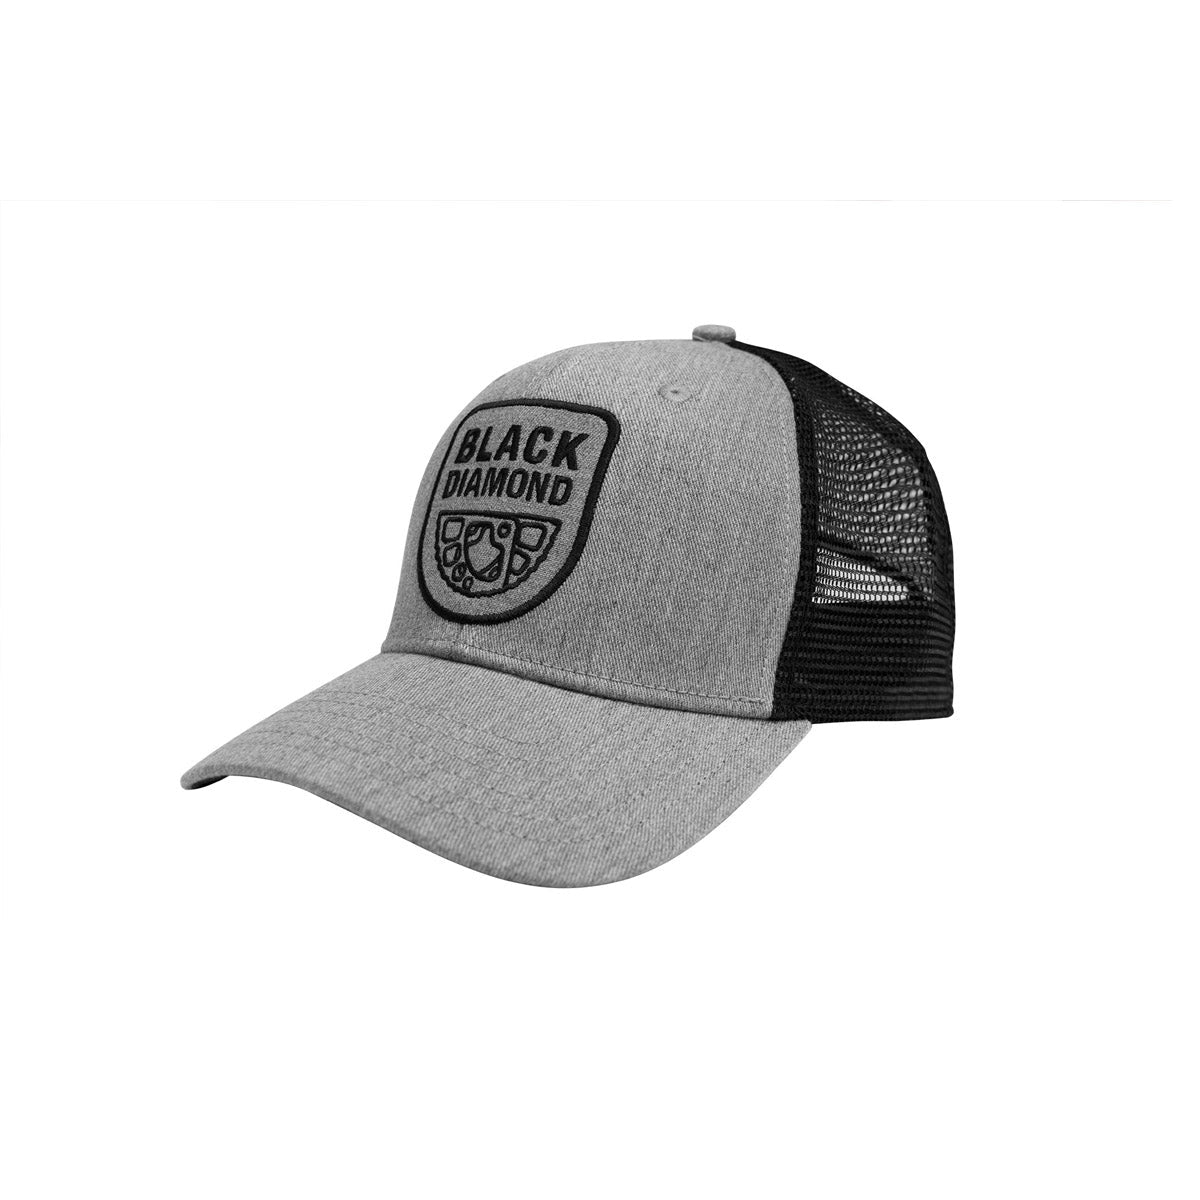 BD Trucker Hat